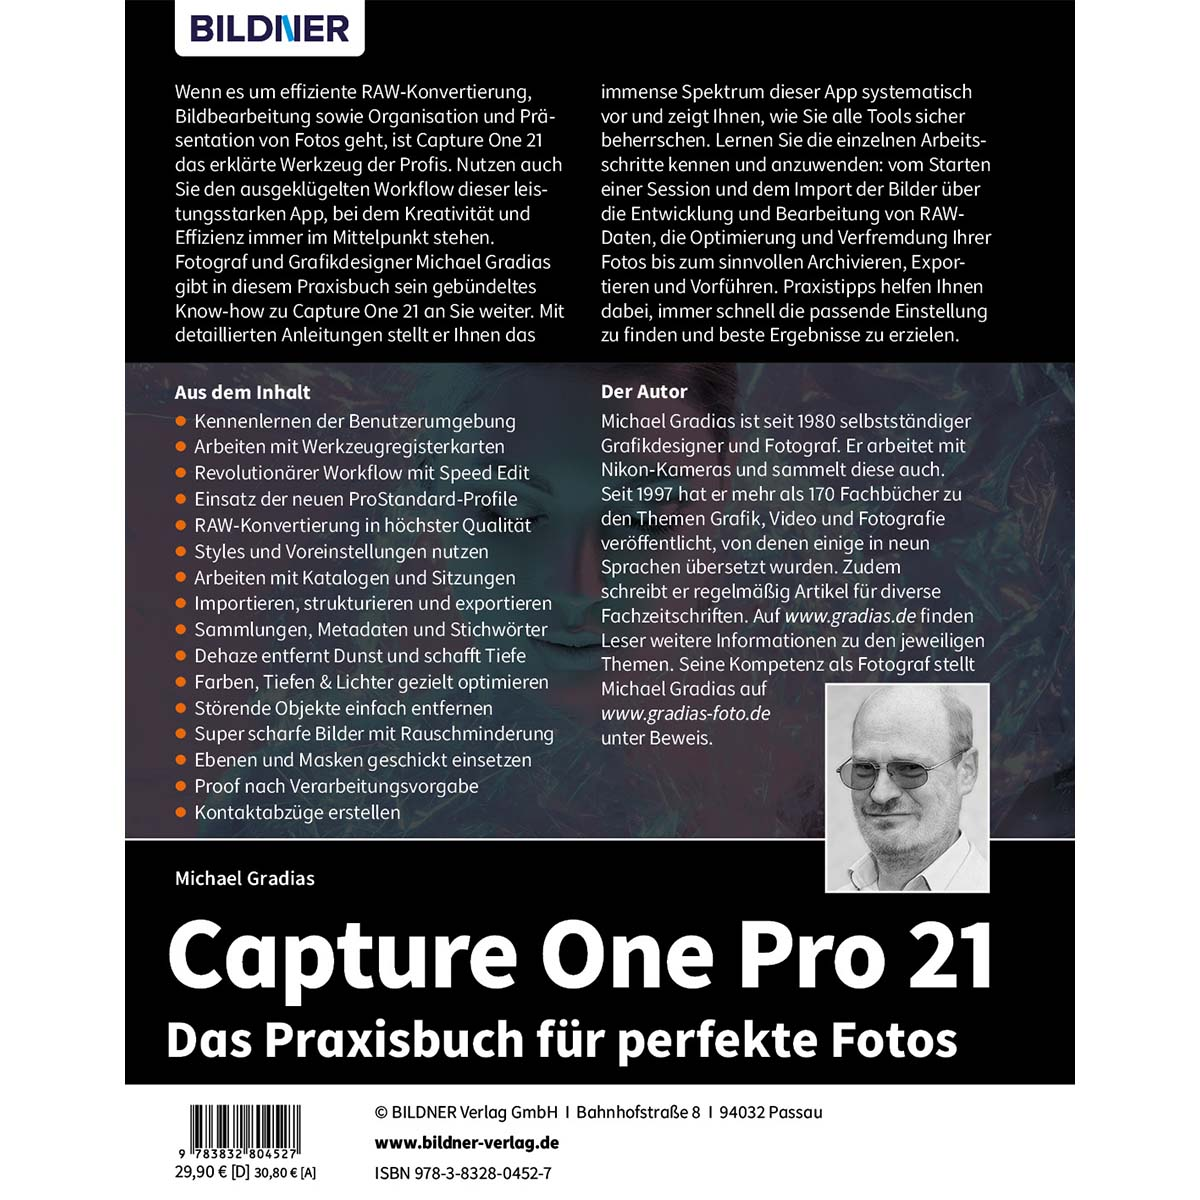 Das Pro für perfekte Praxisbuch 21 - One Fotos Capture